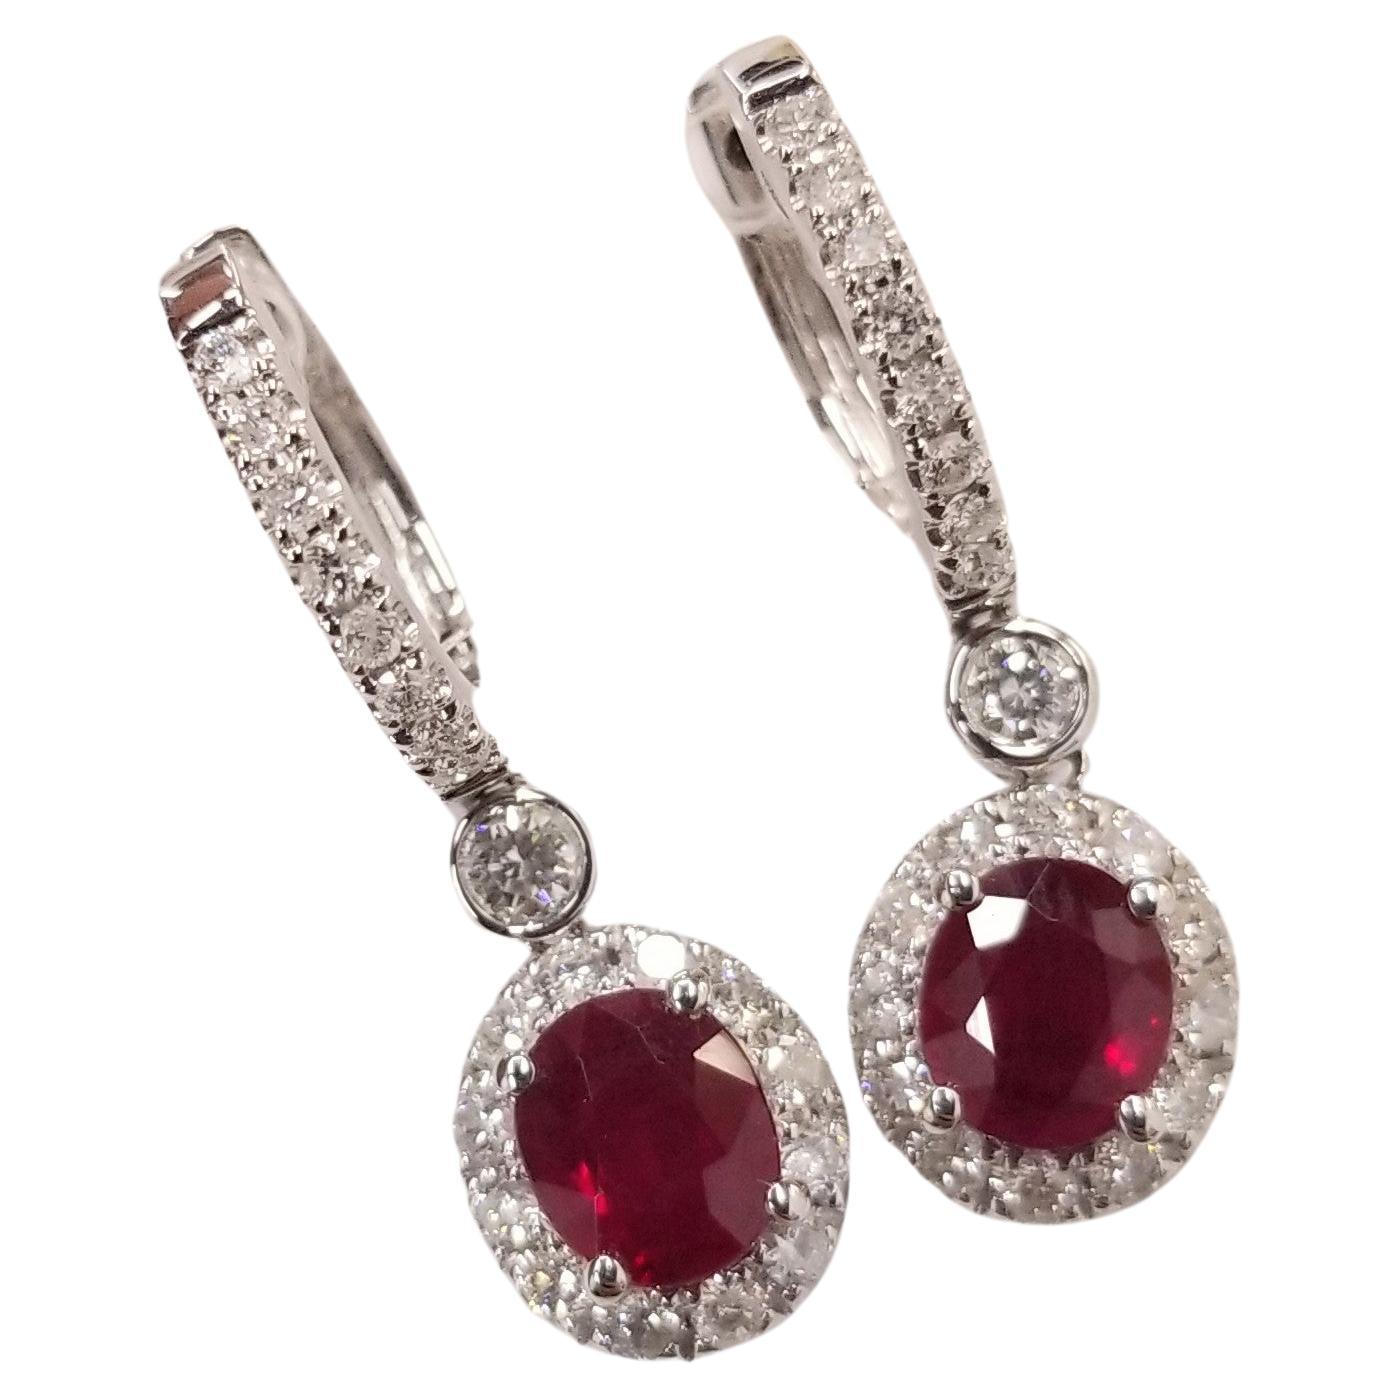 IGI Certified 1.58 Carat Ruby & 0.44 Carat Diamond Earrings in 18K White Gold For Sale